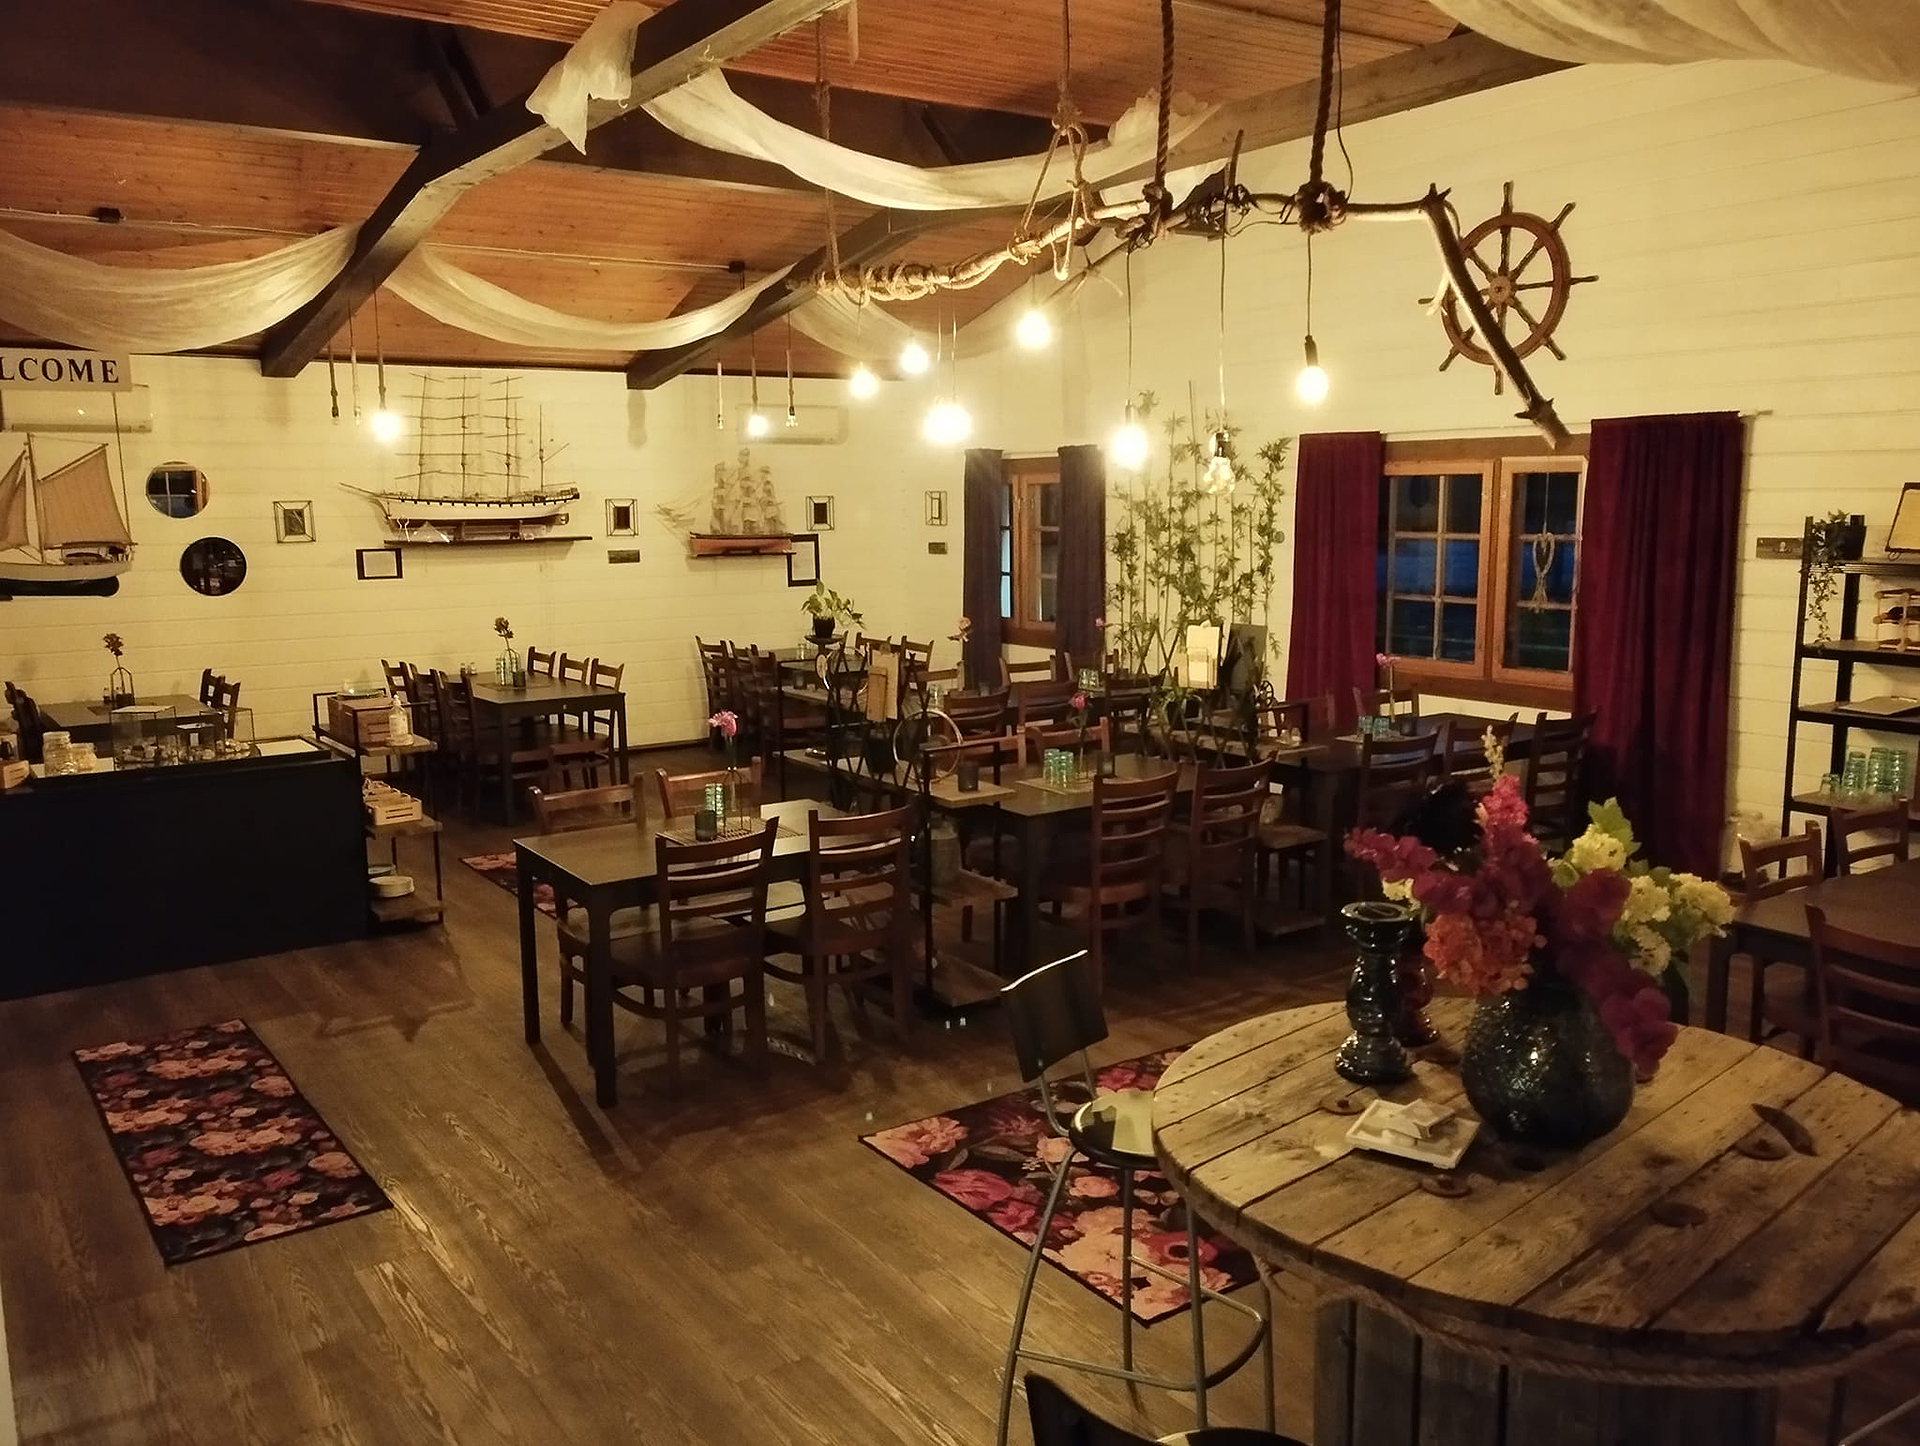 Meriravintola Wanha Wellamo Kokkolan Ykspihlajassa tarjoaa lounasta, á la carte, juhlatiloja niin yksityis- kuin yrityskäyttöön.